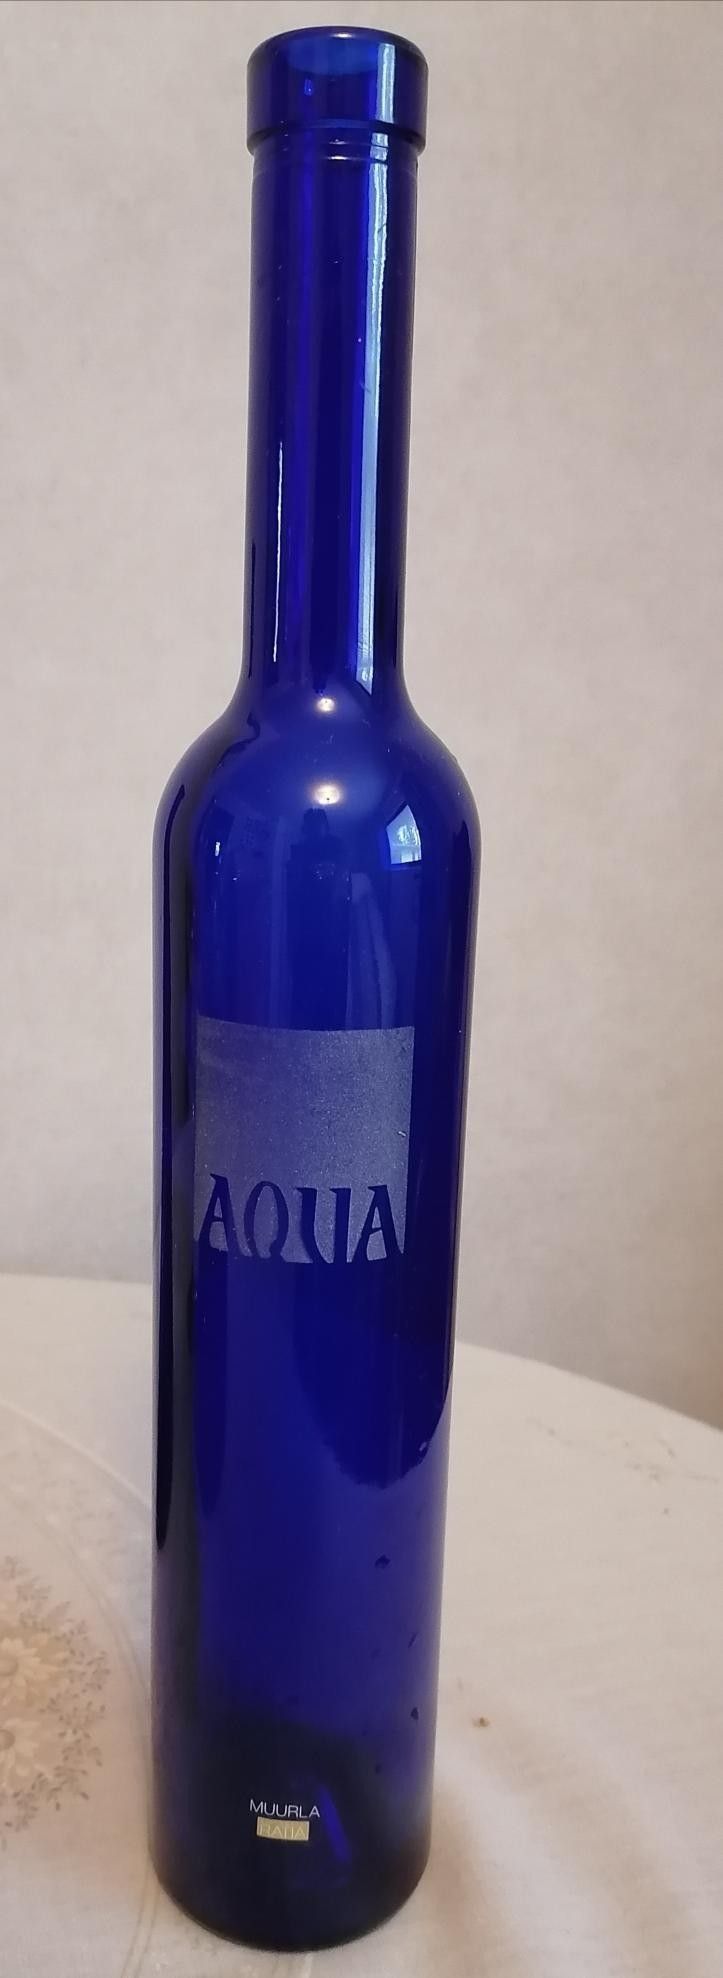 Sininen Aqua-pullo ja sininen maljakko